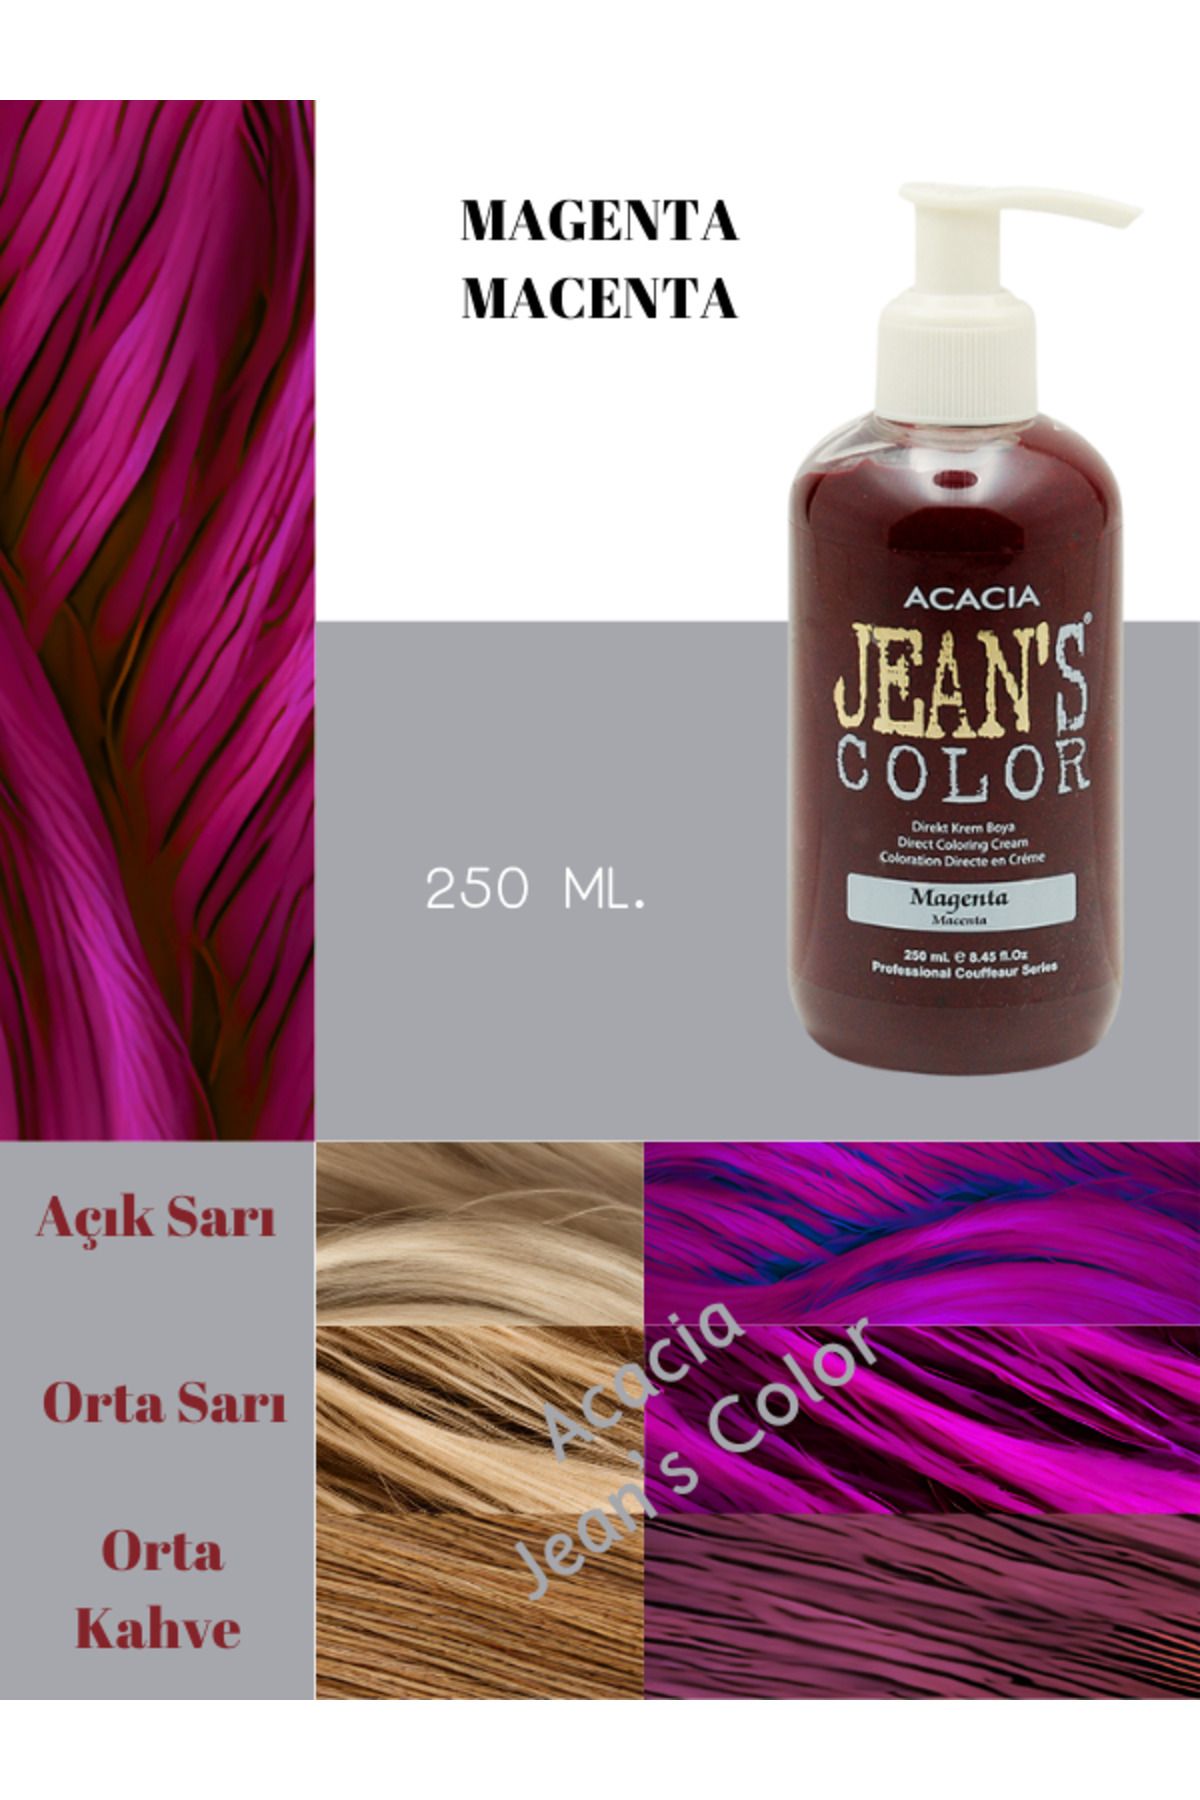 jeans color Amonyaksız Renkli Saç Boyası Magenta 250 Ml.kokusuz Su Bazlı Macenta Hair Dye